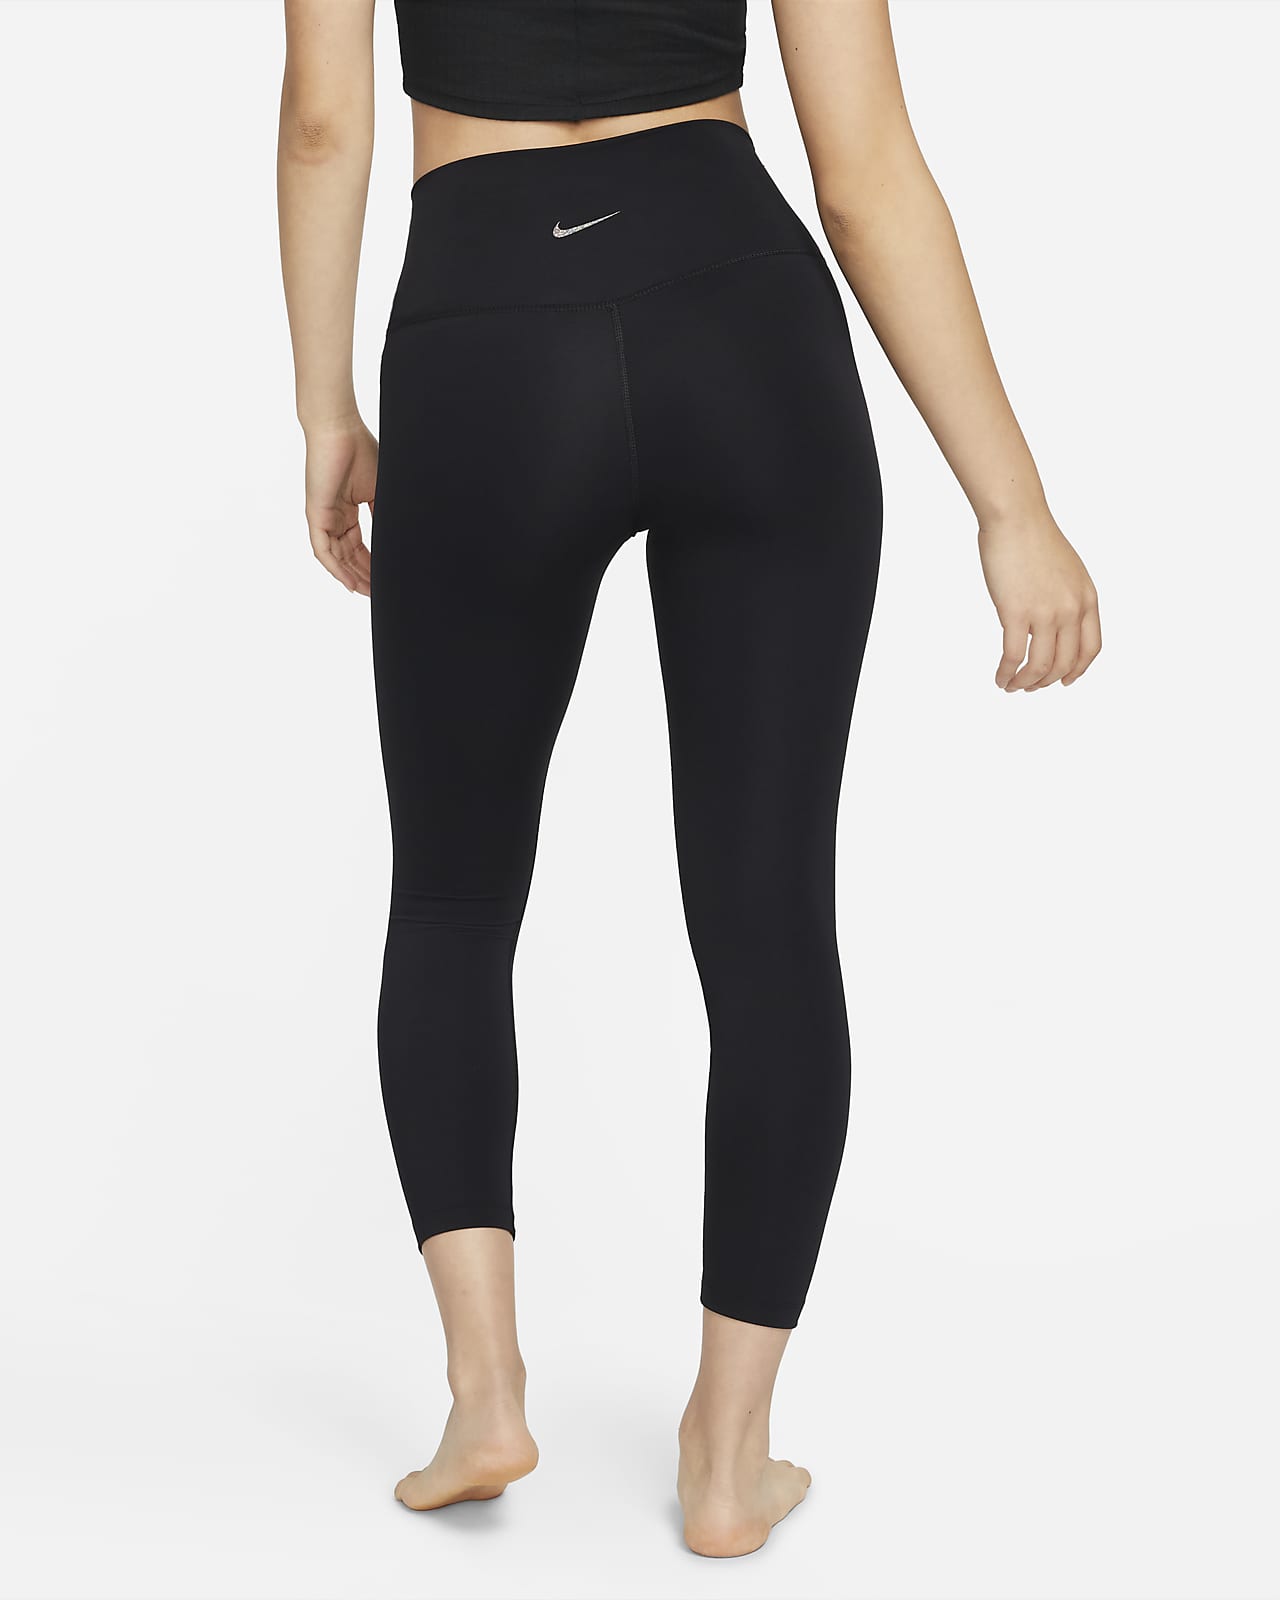 Women's Tights & Leggings. Nike VN